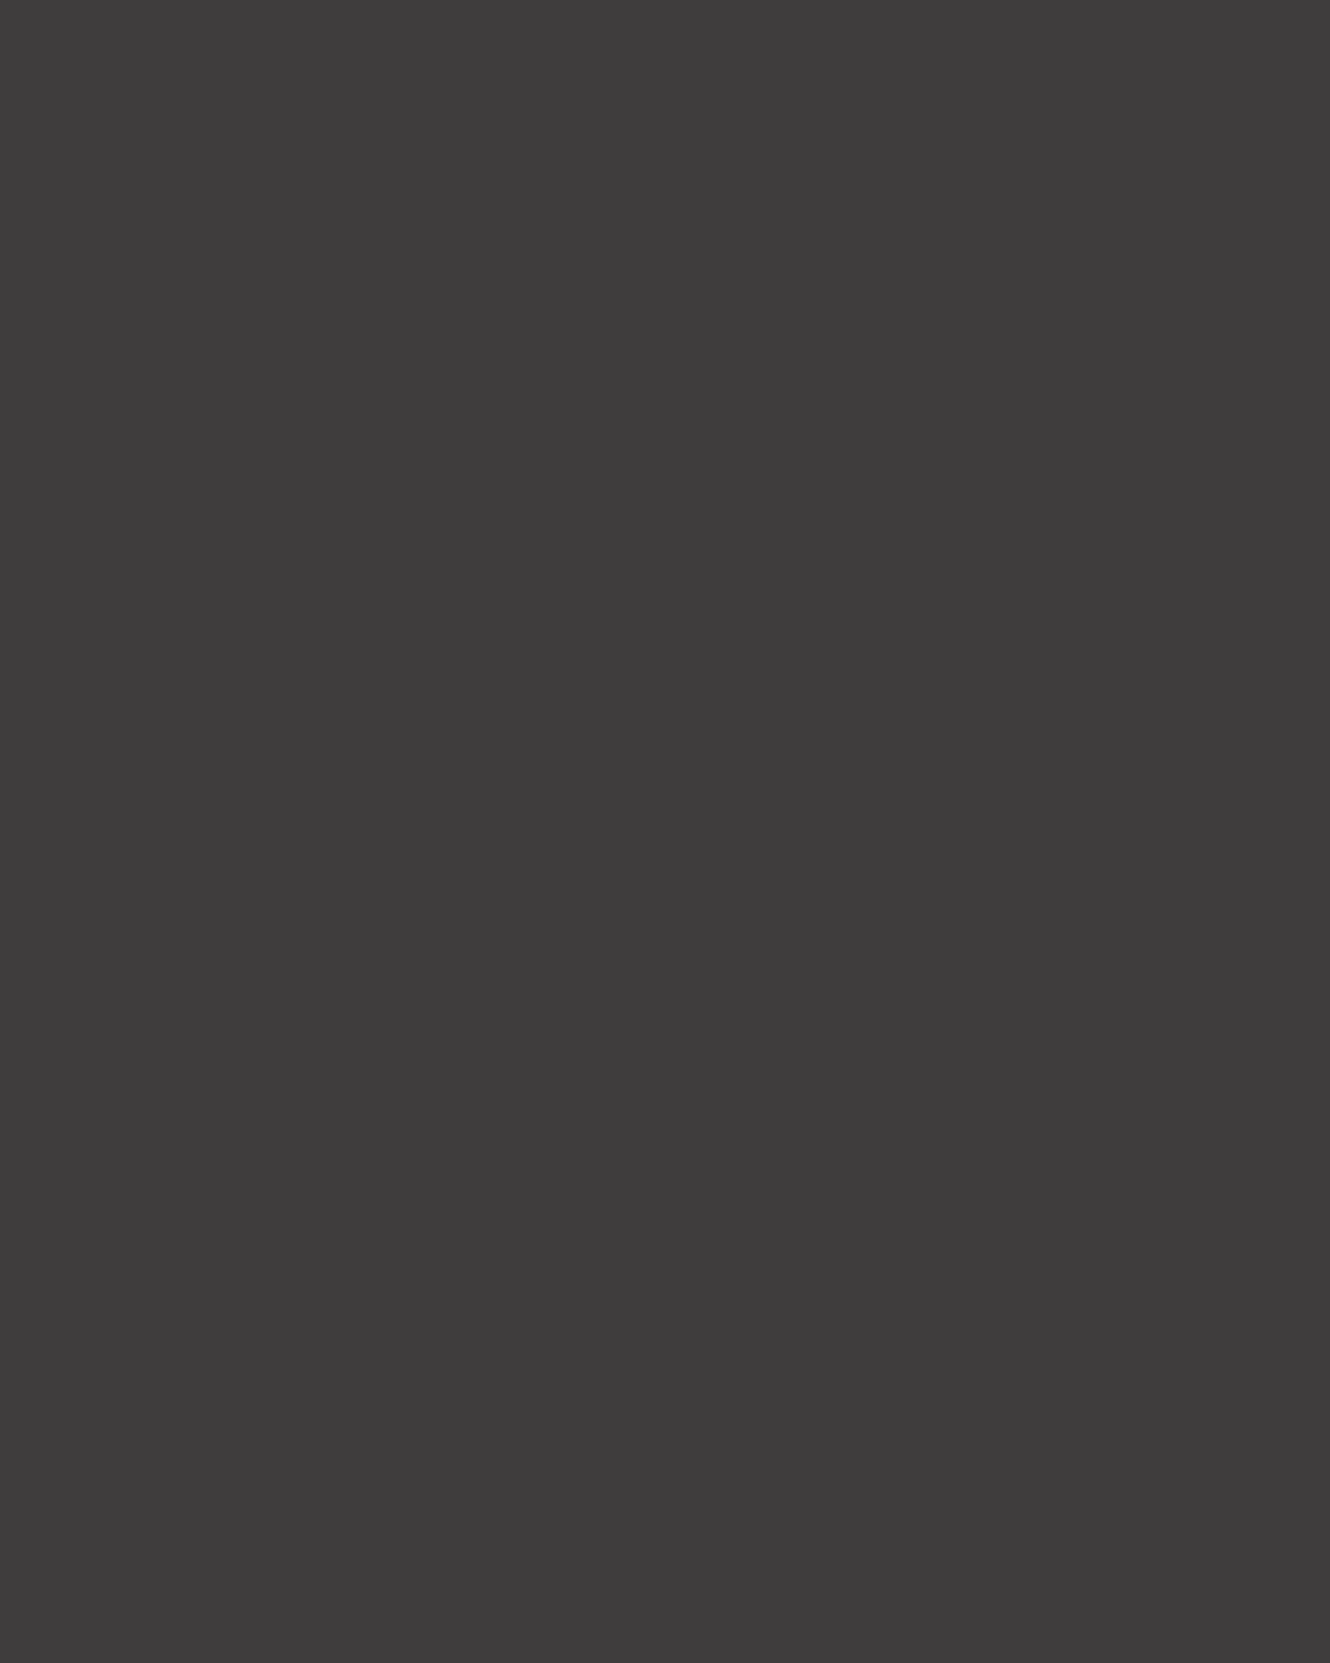 Владимир Боровиковский. Екатерина II на прогулке в Царскосельском парке (фрагмент). 1794. Государственная Третьяковская галерея, Москва